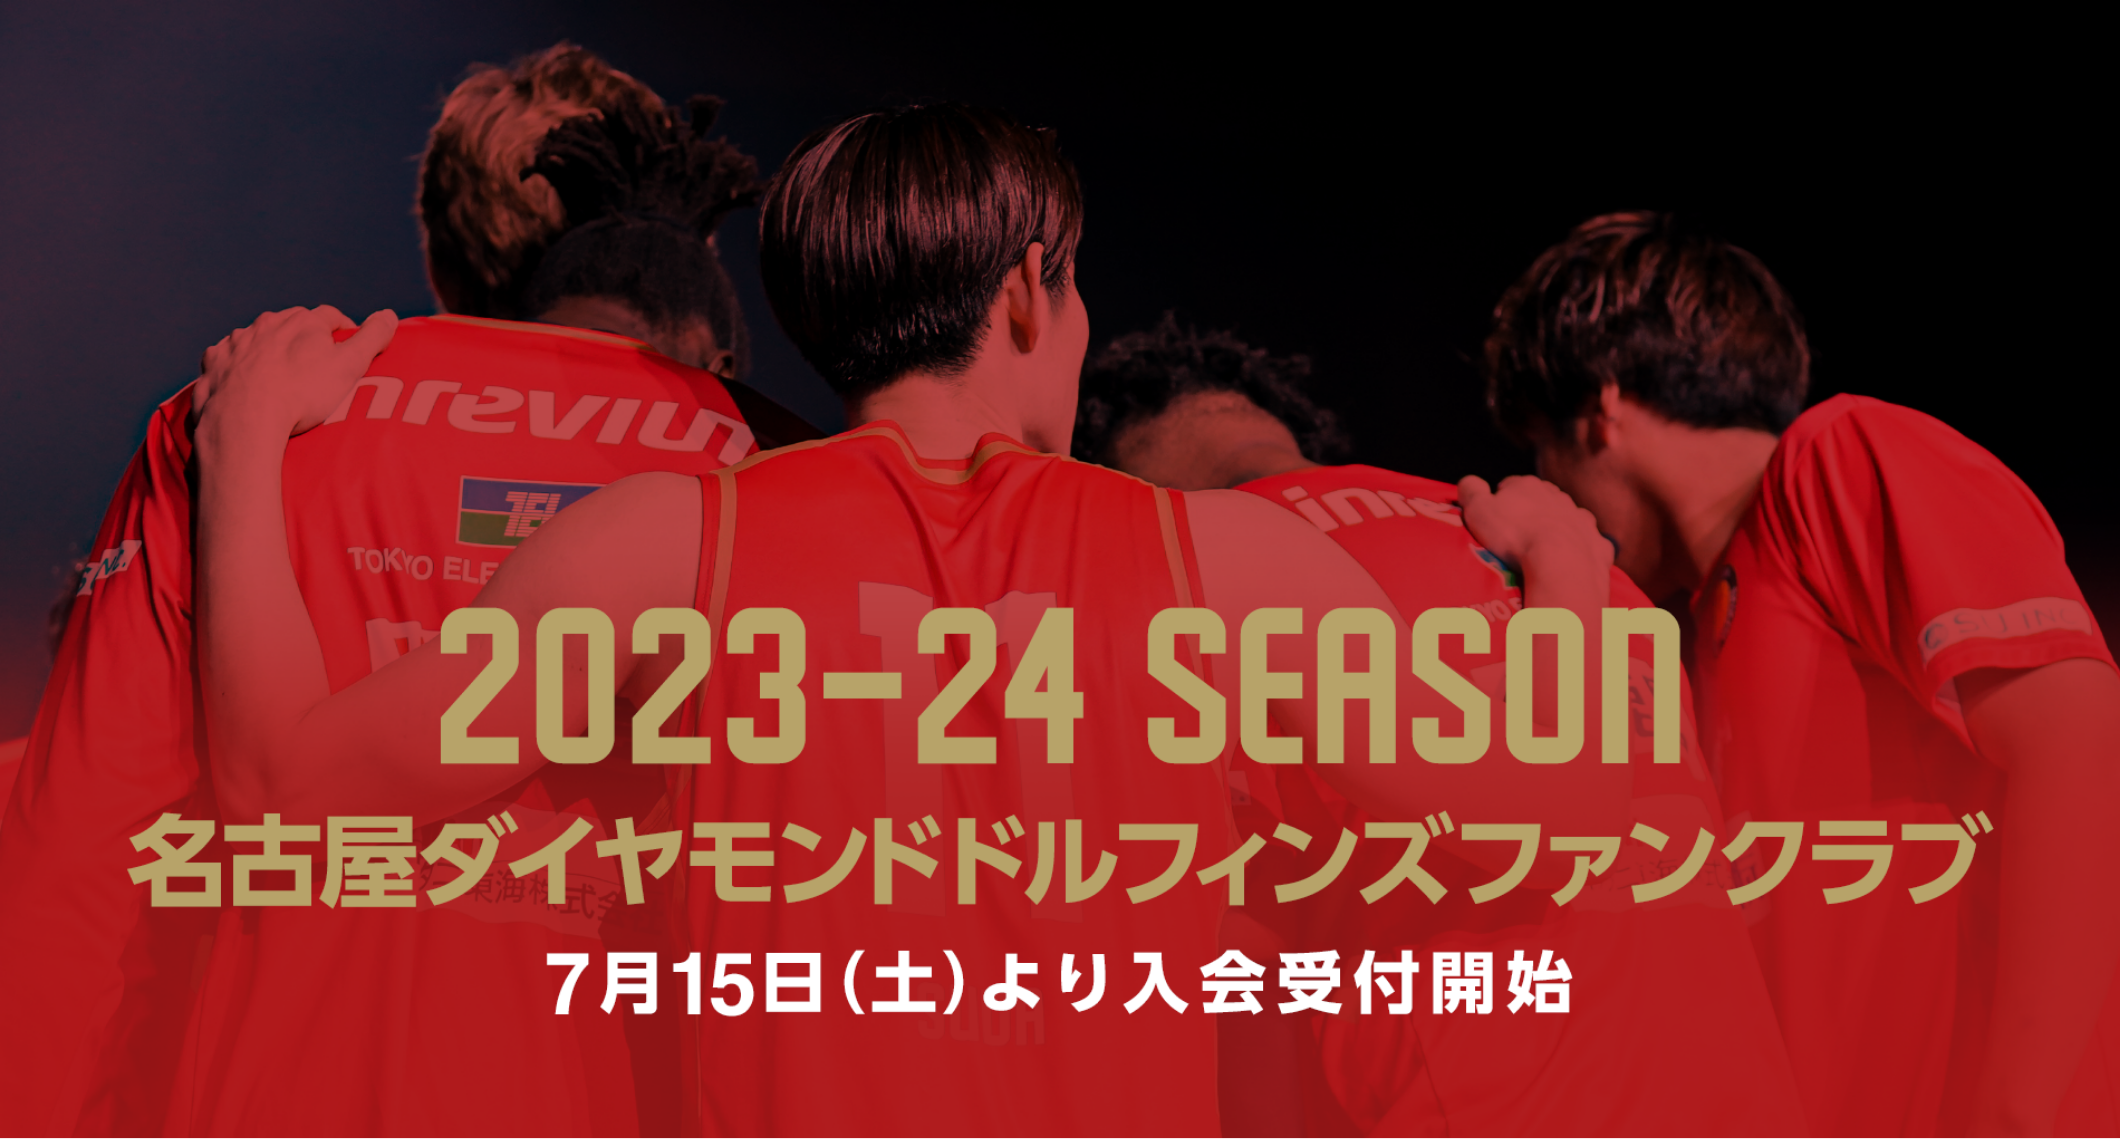 2023-24SEASON ファンクラブ概要 | 名古屋ダイヤモンドドルフィンズ